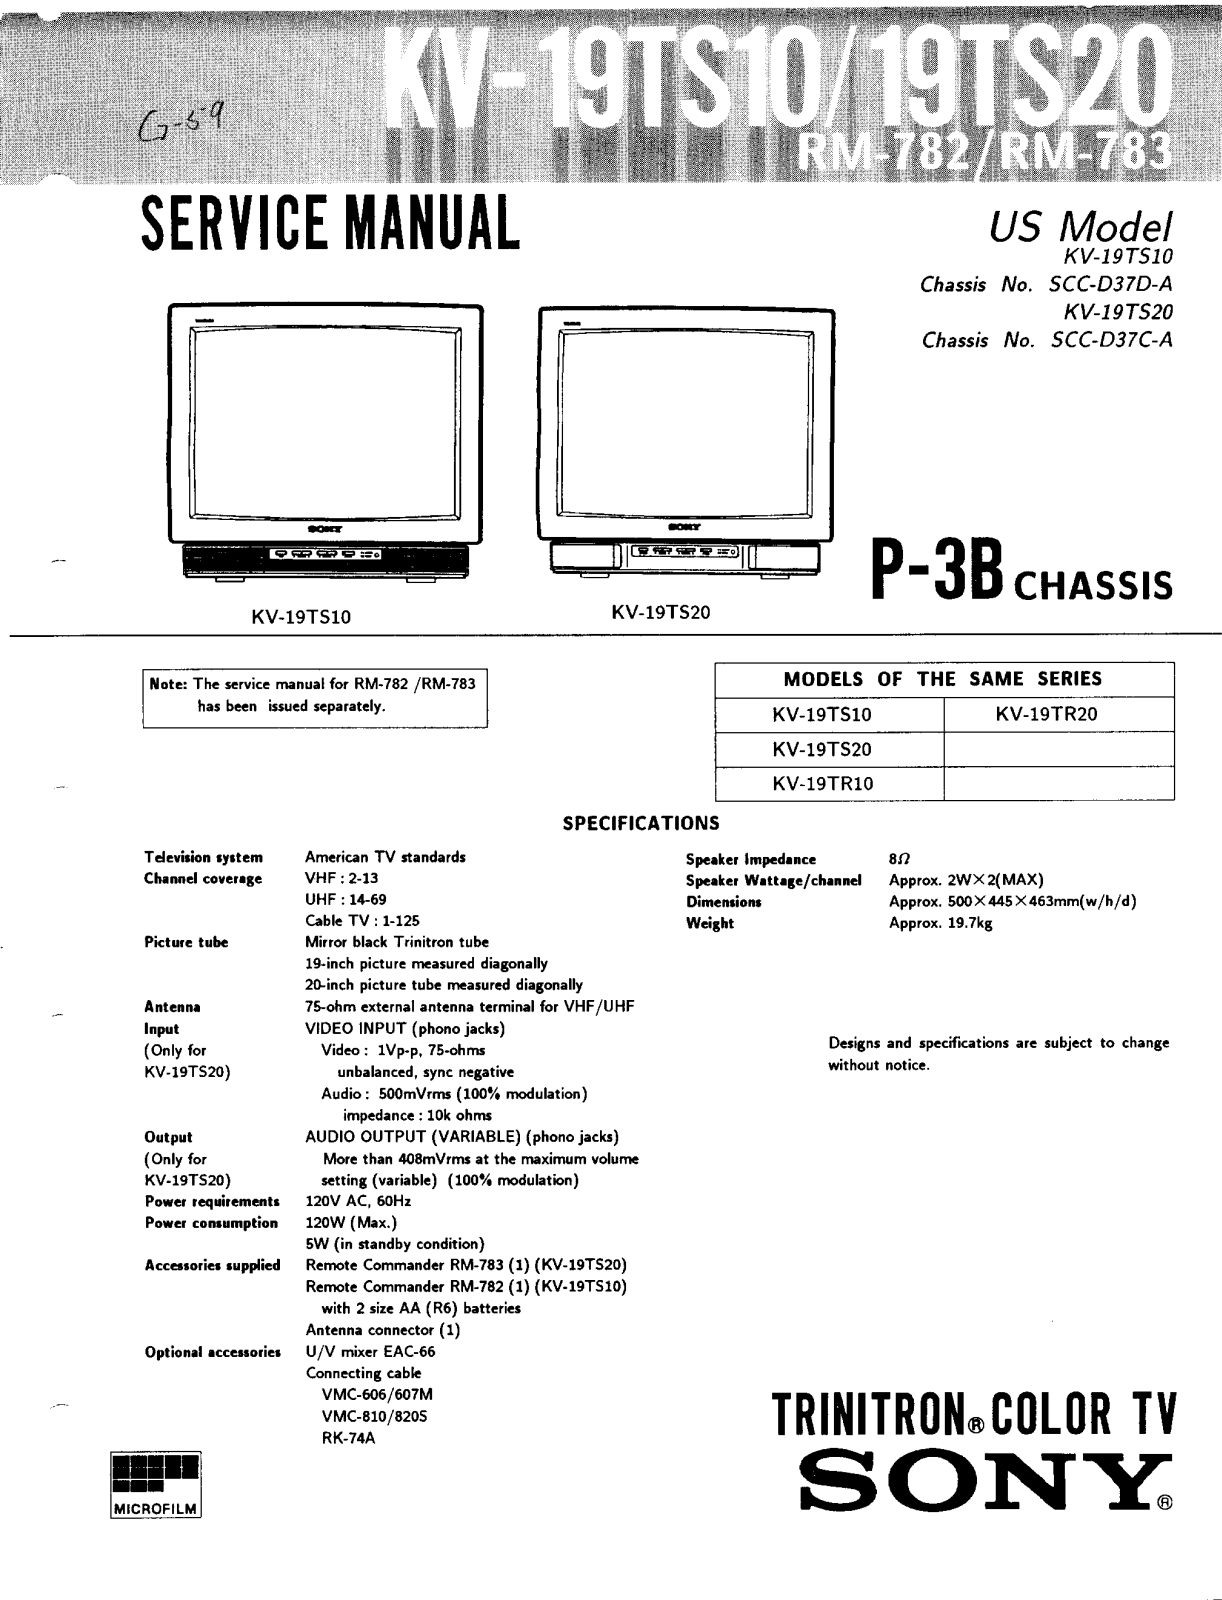 SONY KV-19TS20 Service Manual